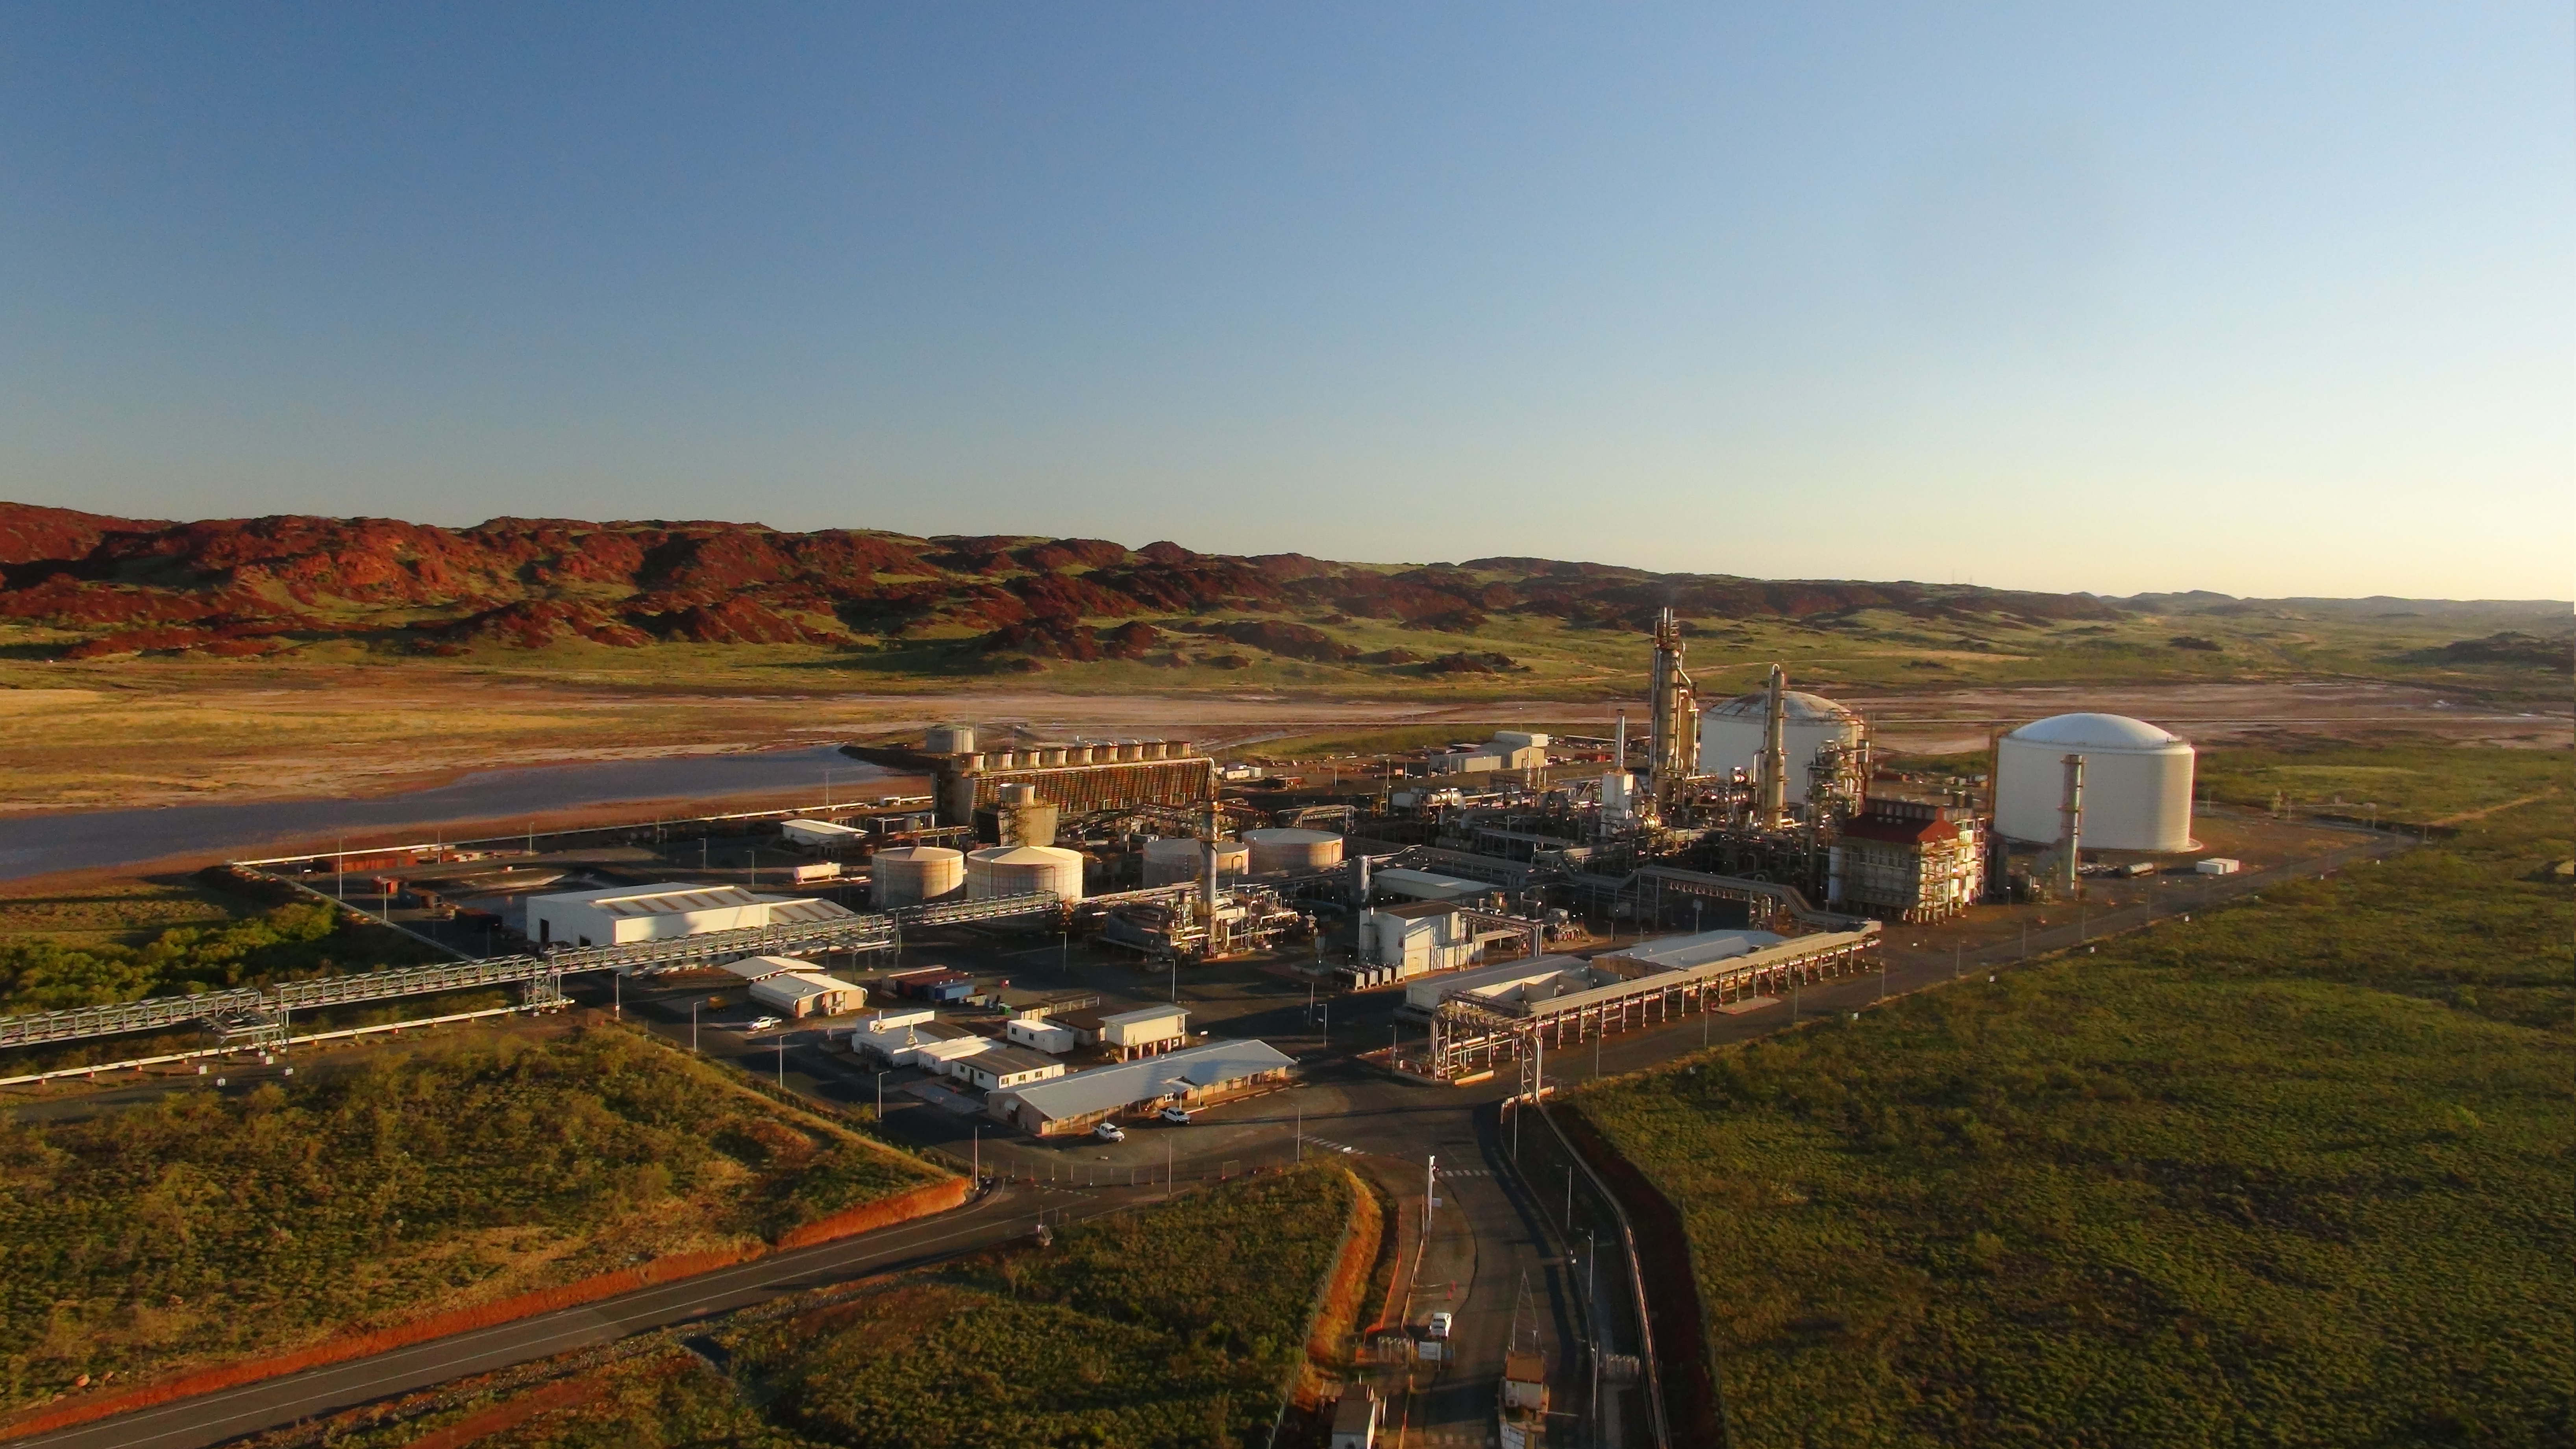 Die Ammoniakproduktionsanlage Yara in Australien, künftiger Standort eines der weltweit ersten Projekte für die Herstellung von erneuerbarem Wasserstoff in industriellem Maßstab.